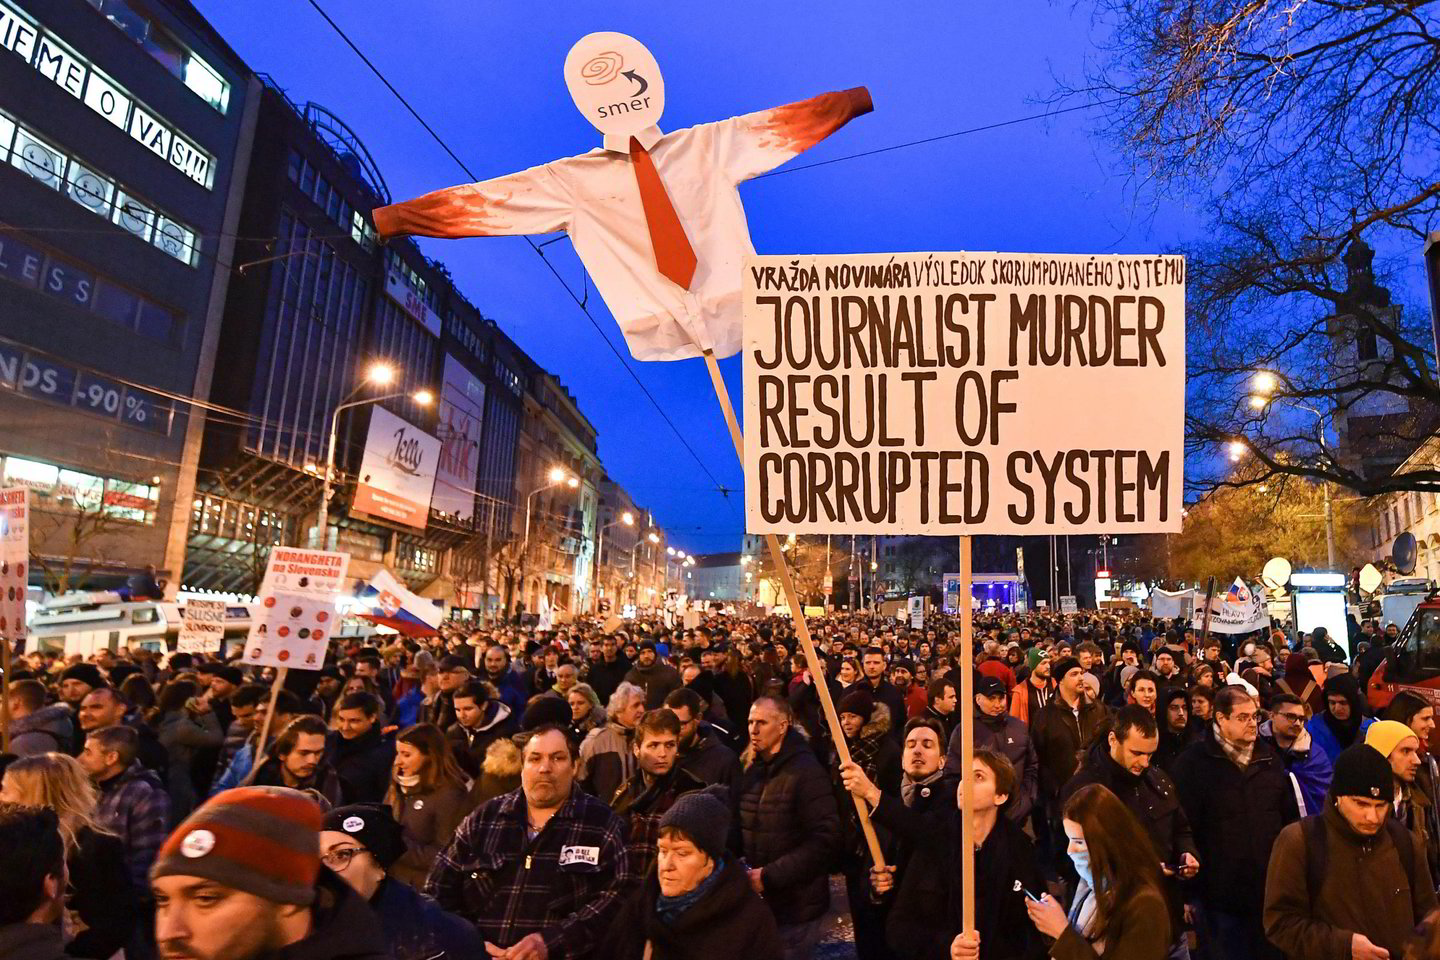 Po žurnalisto, tyrusio ryšius tarp Bratislavos vyriausybės ir mafijos, nužudymo Slovakijoje kilo protestai, žmonės reikalavo politikų atsistatydinimo.<br>AFP/Scanpix nuotr.